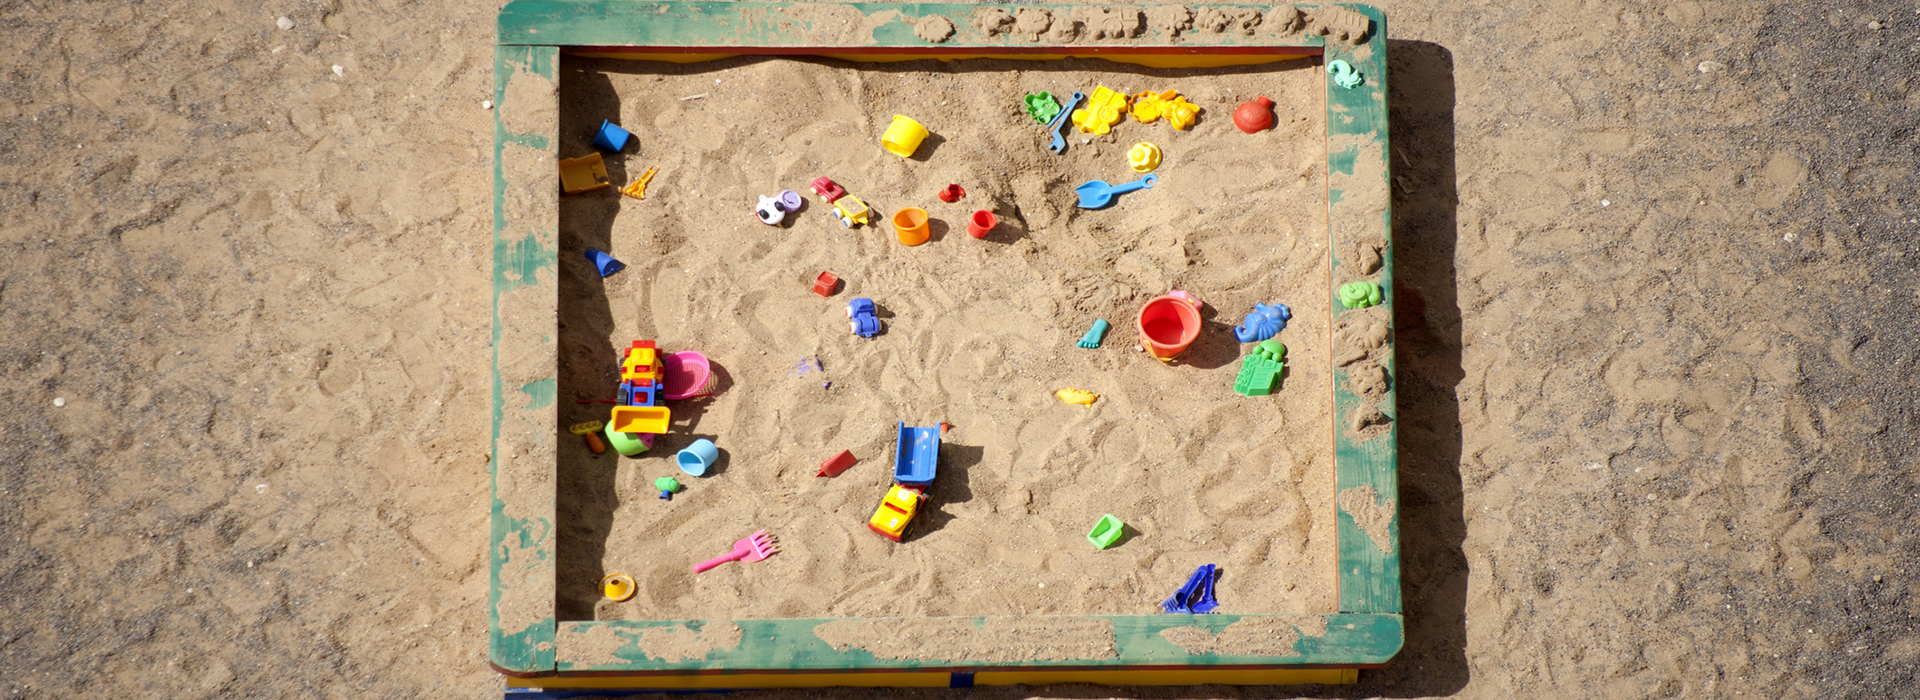 bac à sable avec des jouets